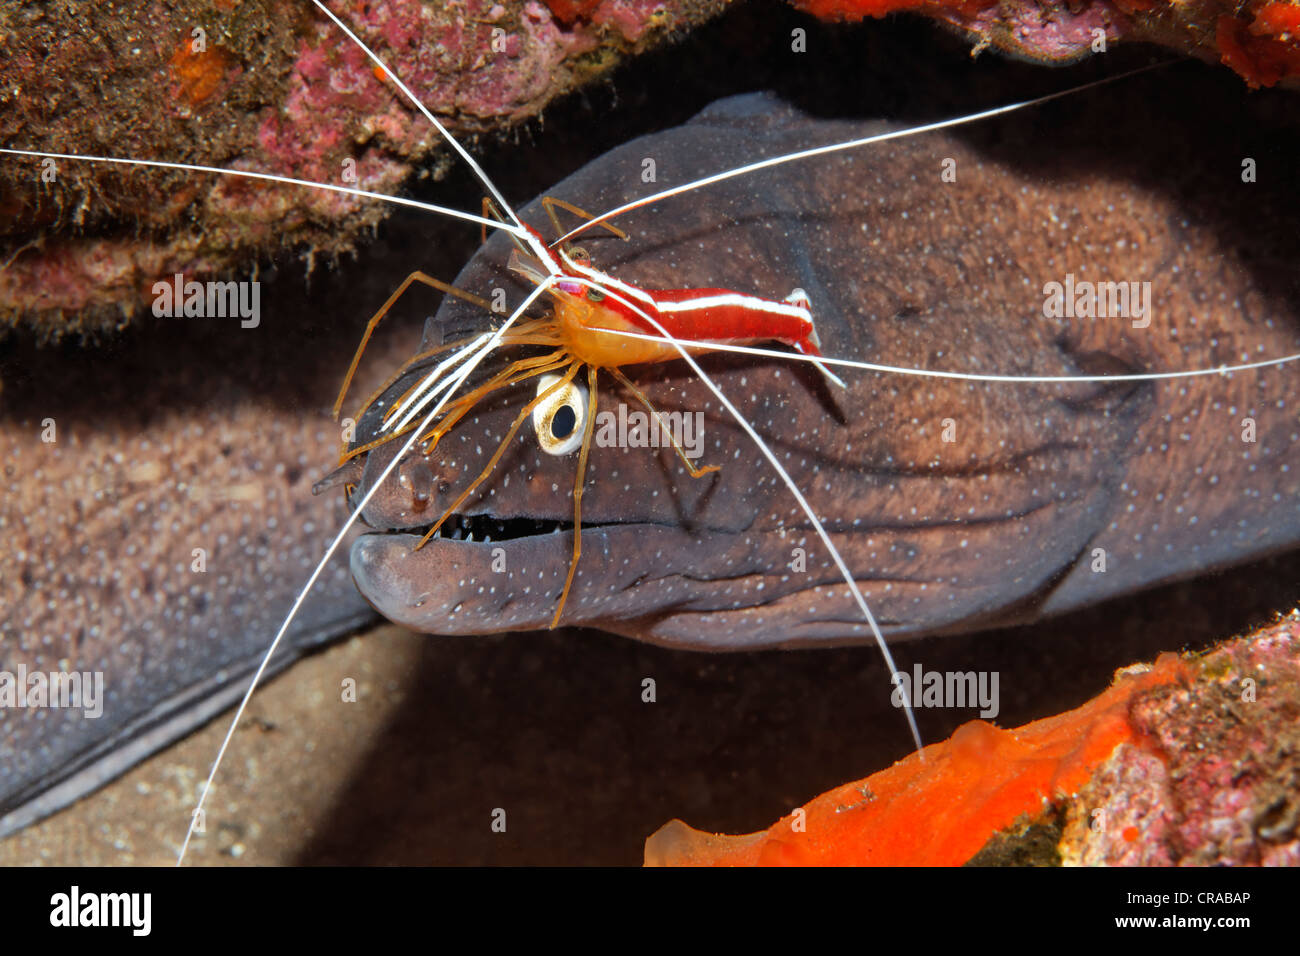 Murena punteggiato o moray eel (Muraena augusti) con pulitore (gamberetti Lysmata grabhami) nel suo nascondiglio, Madeira, Portogallo, Europa Foto Stock